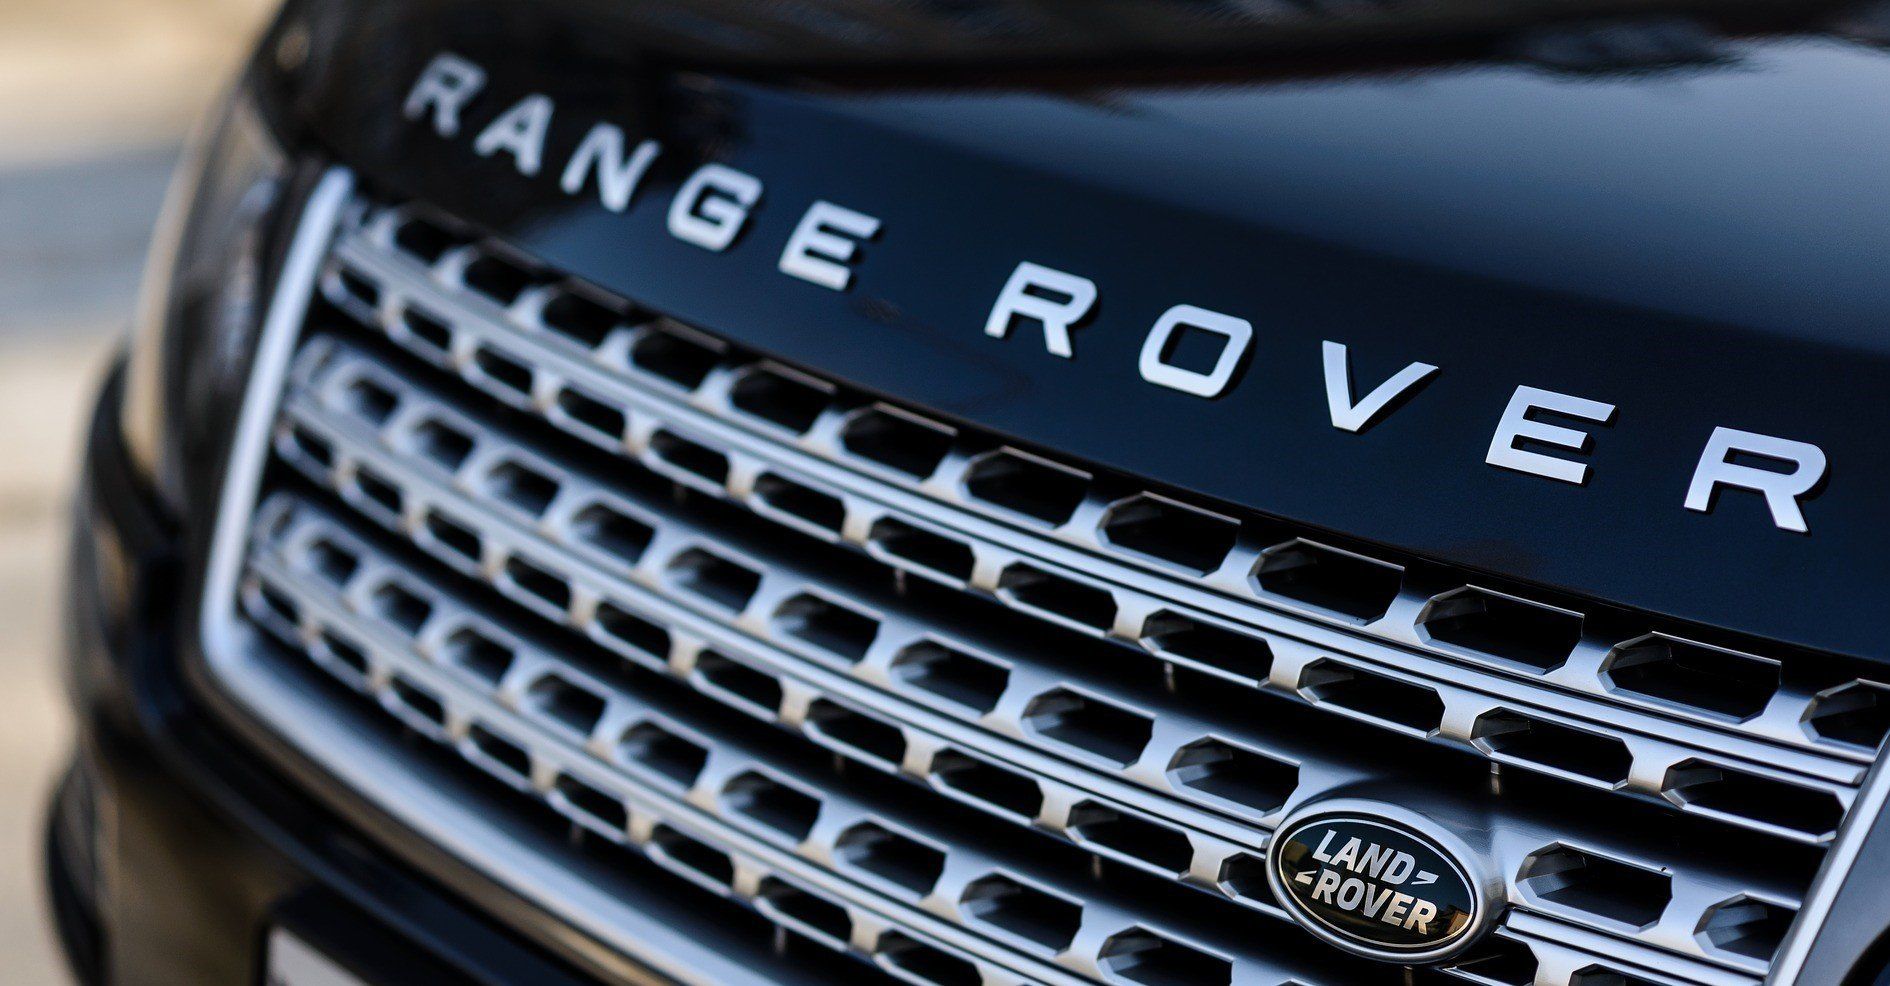 Land Rover Range Rover Bodyshop